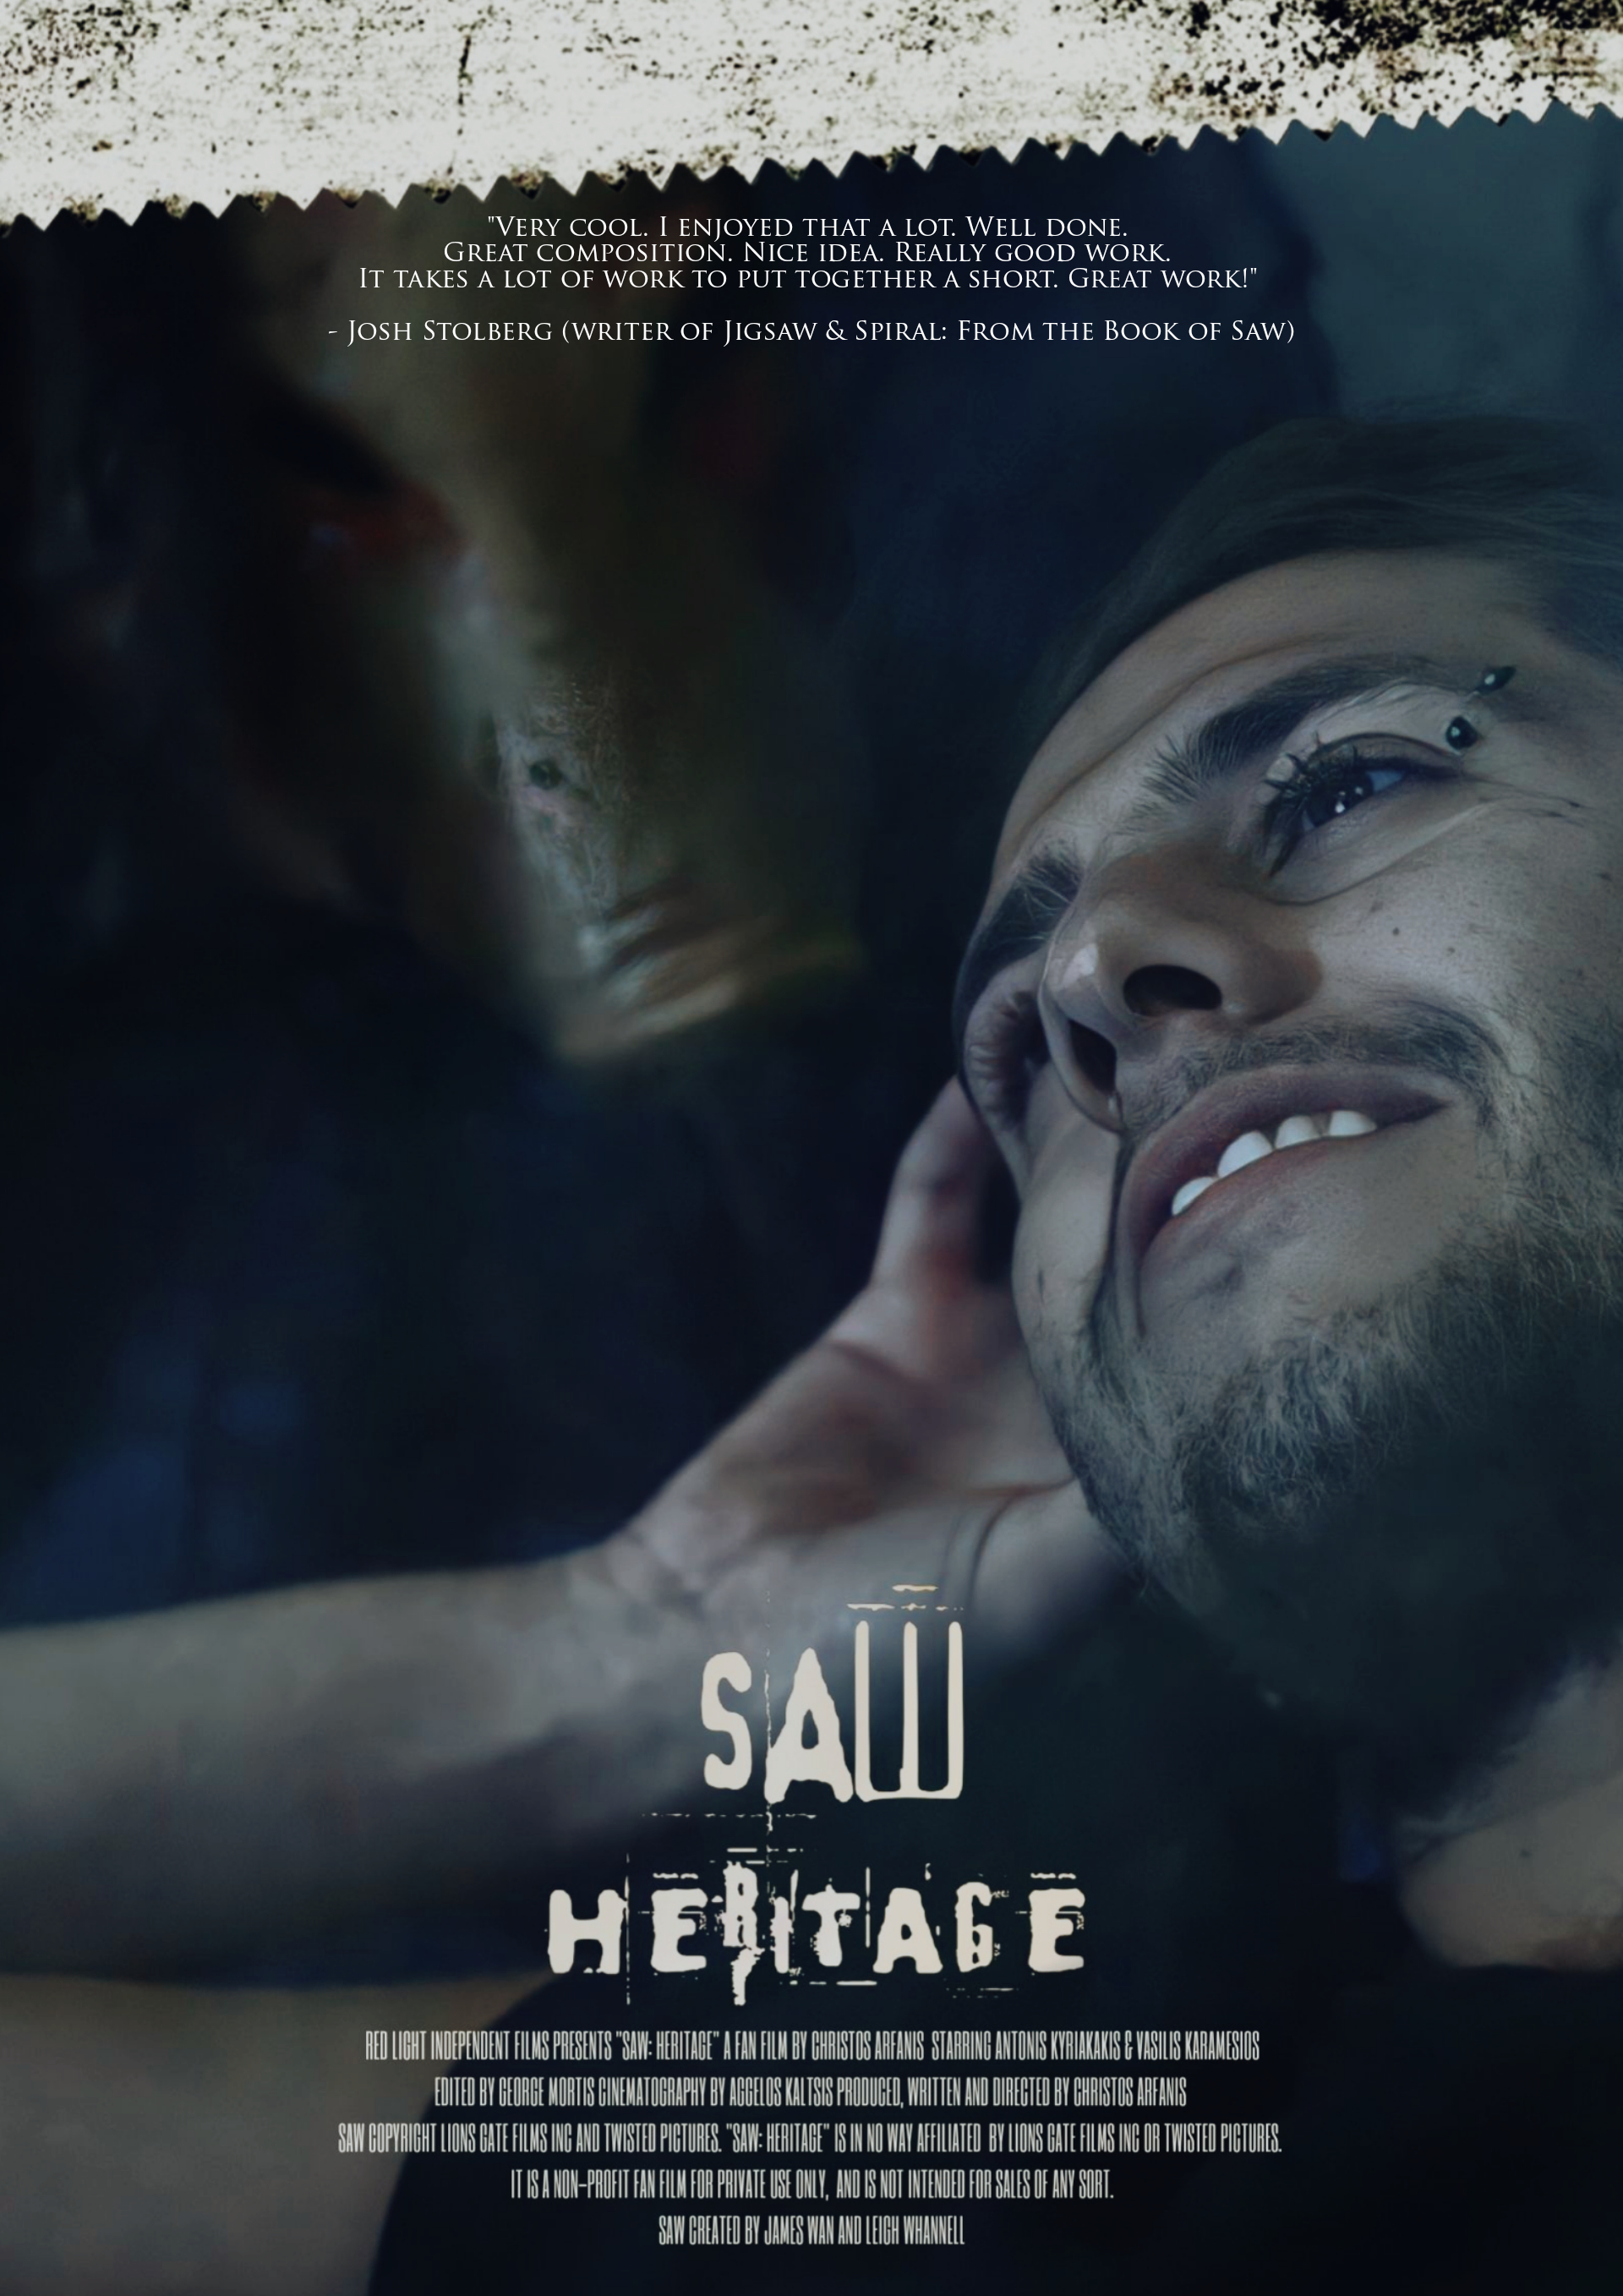 Saw: Heritage - Unauthorized Fan Film